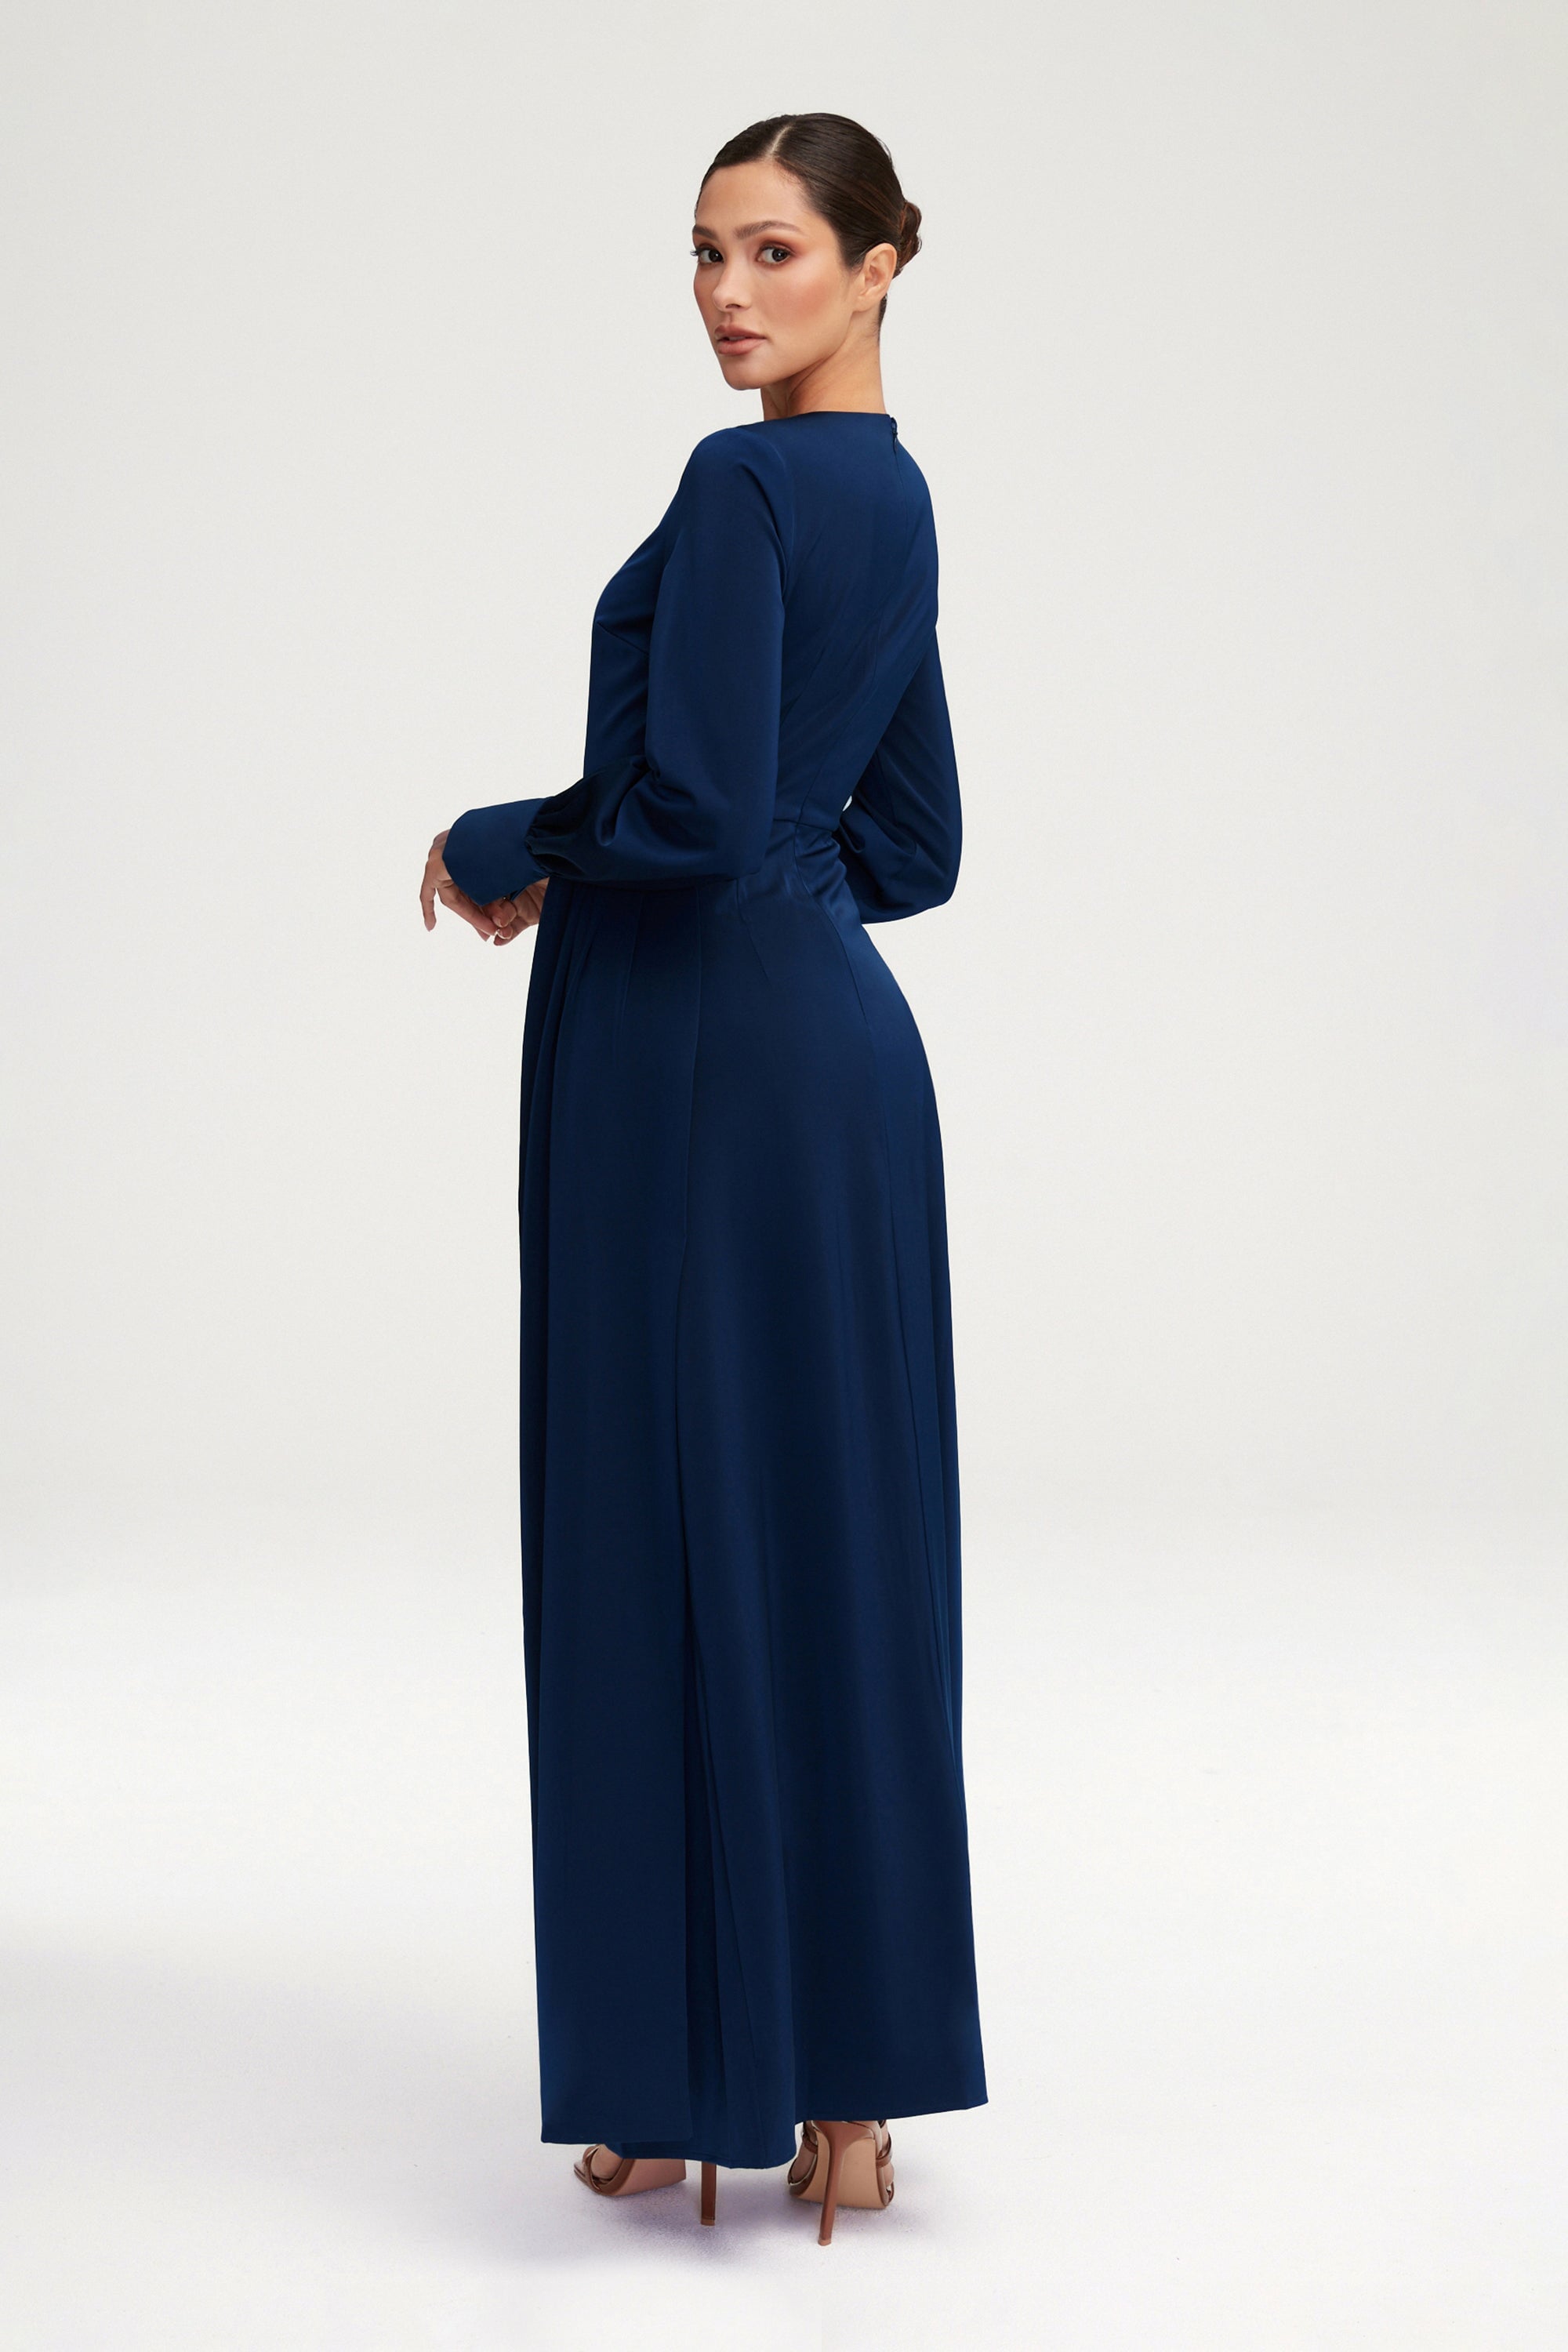 Laylani Satin Rouched Maxi Dress - Night Sky Clothing Veiled 